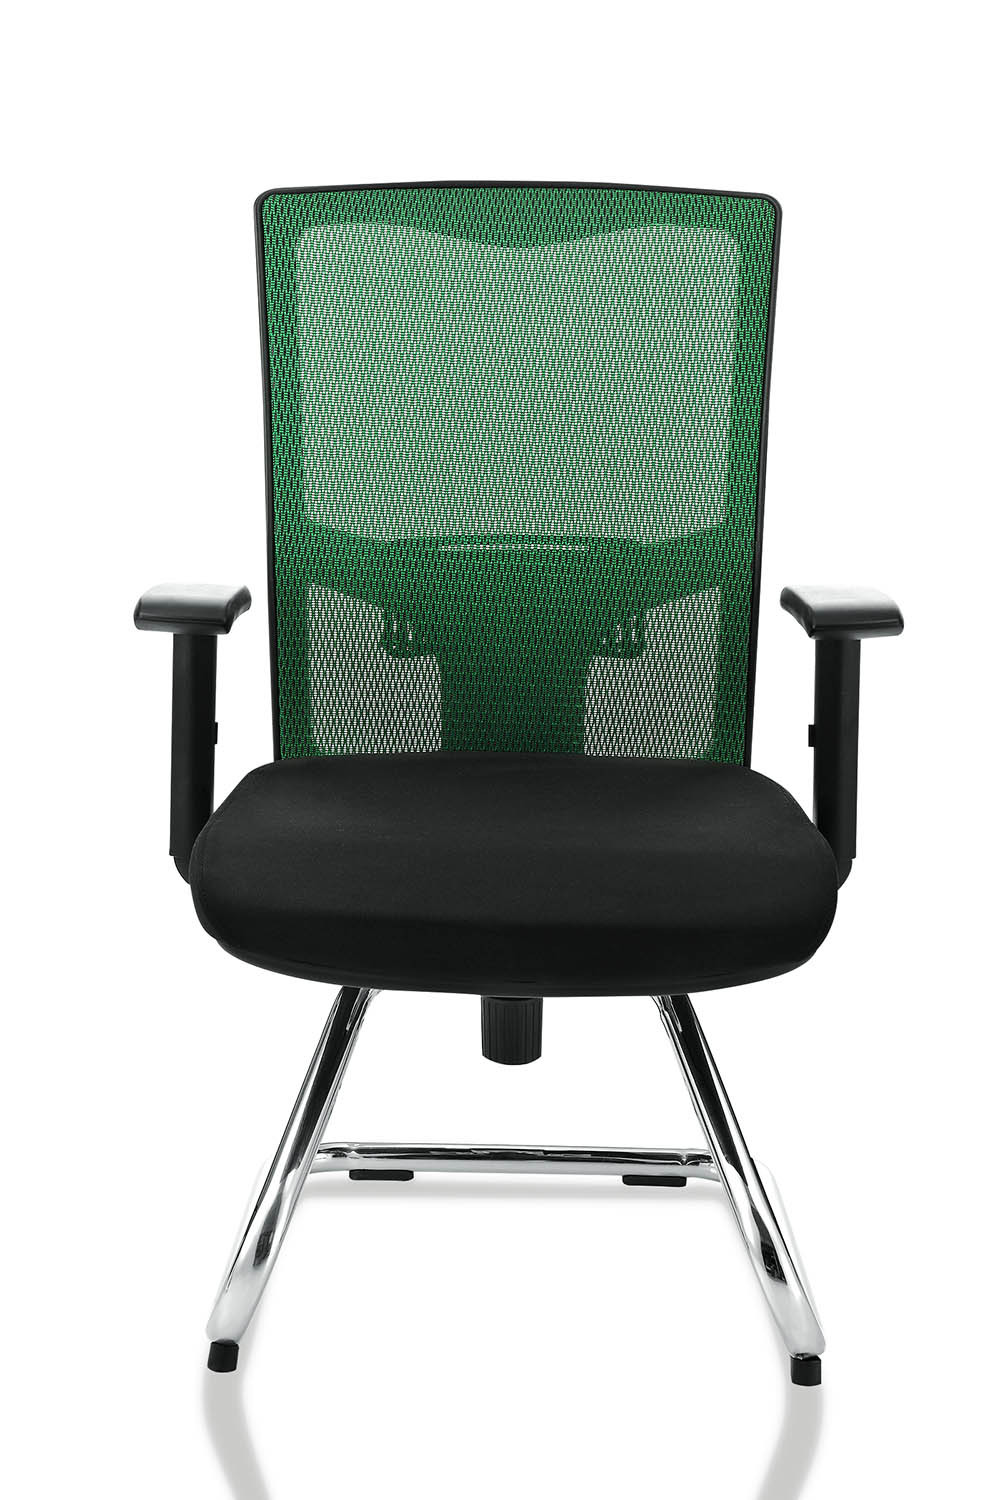 厂家直销 弓形会议椅 职员透气会议椅 深圳中式升降椅